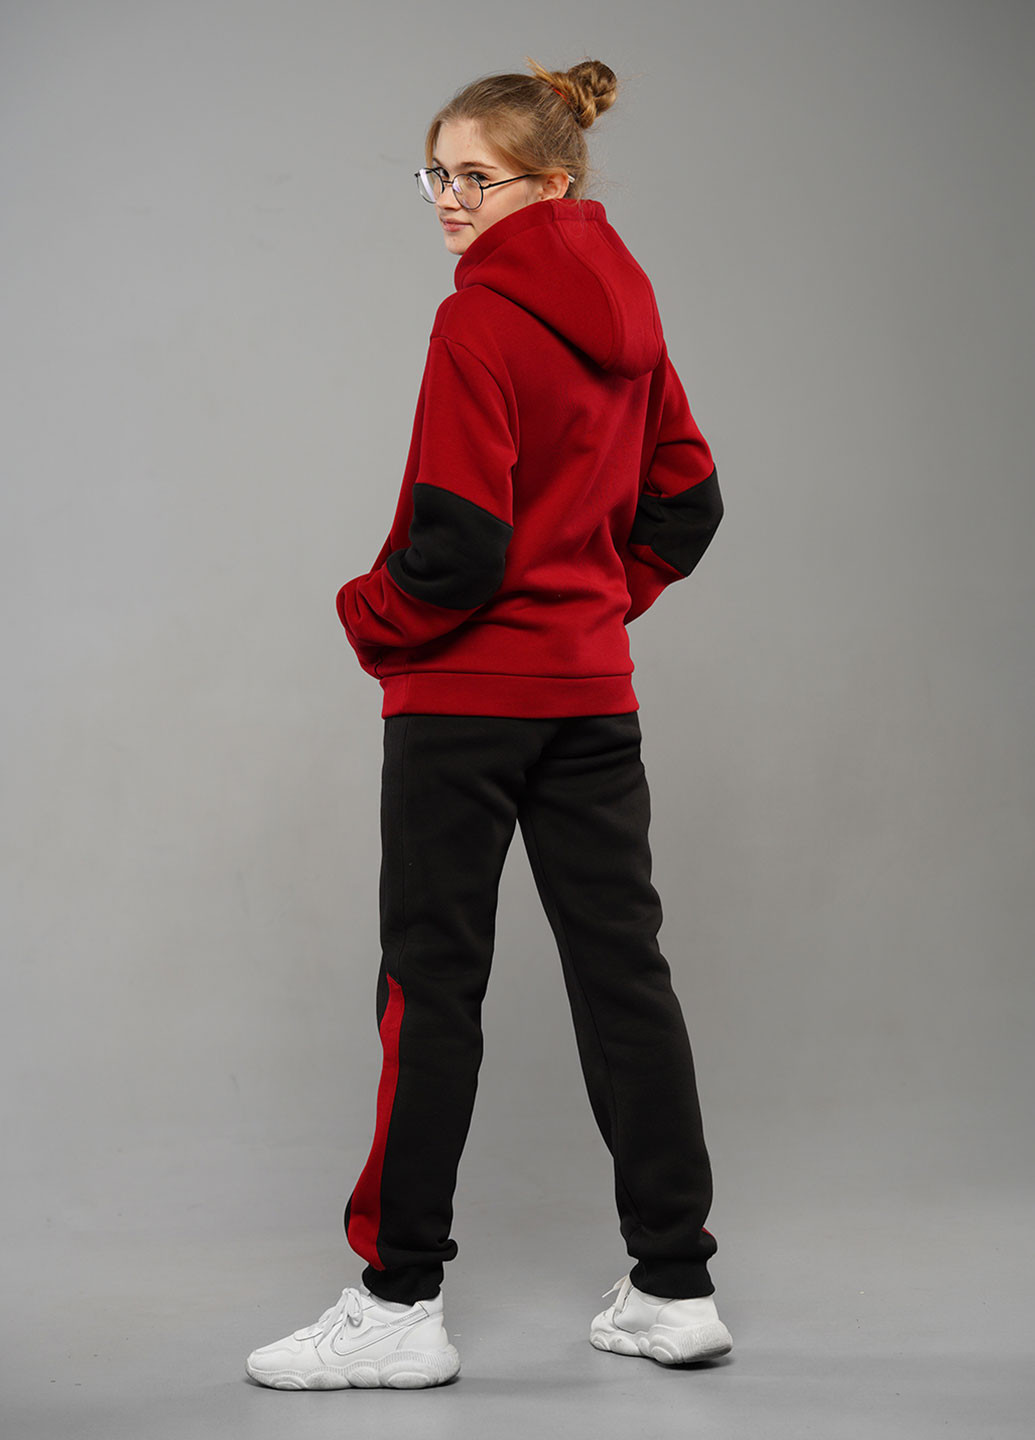 Бордовый зимний утепленный спортивный костюм брючный Tiaren Лаура